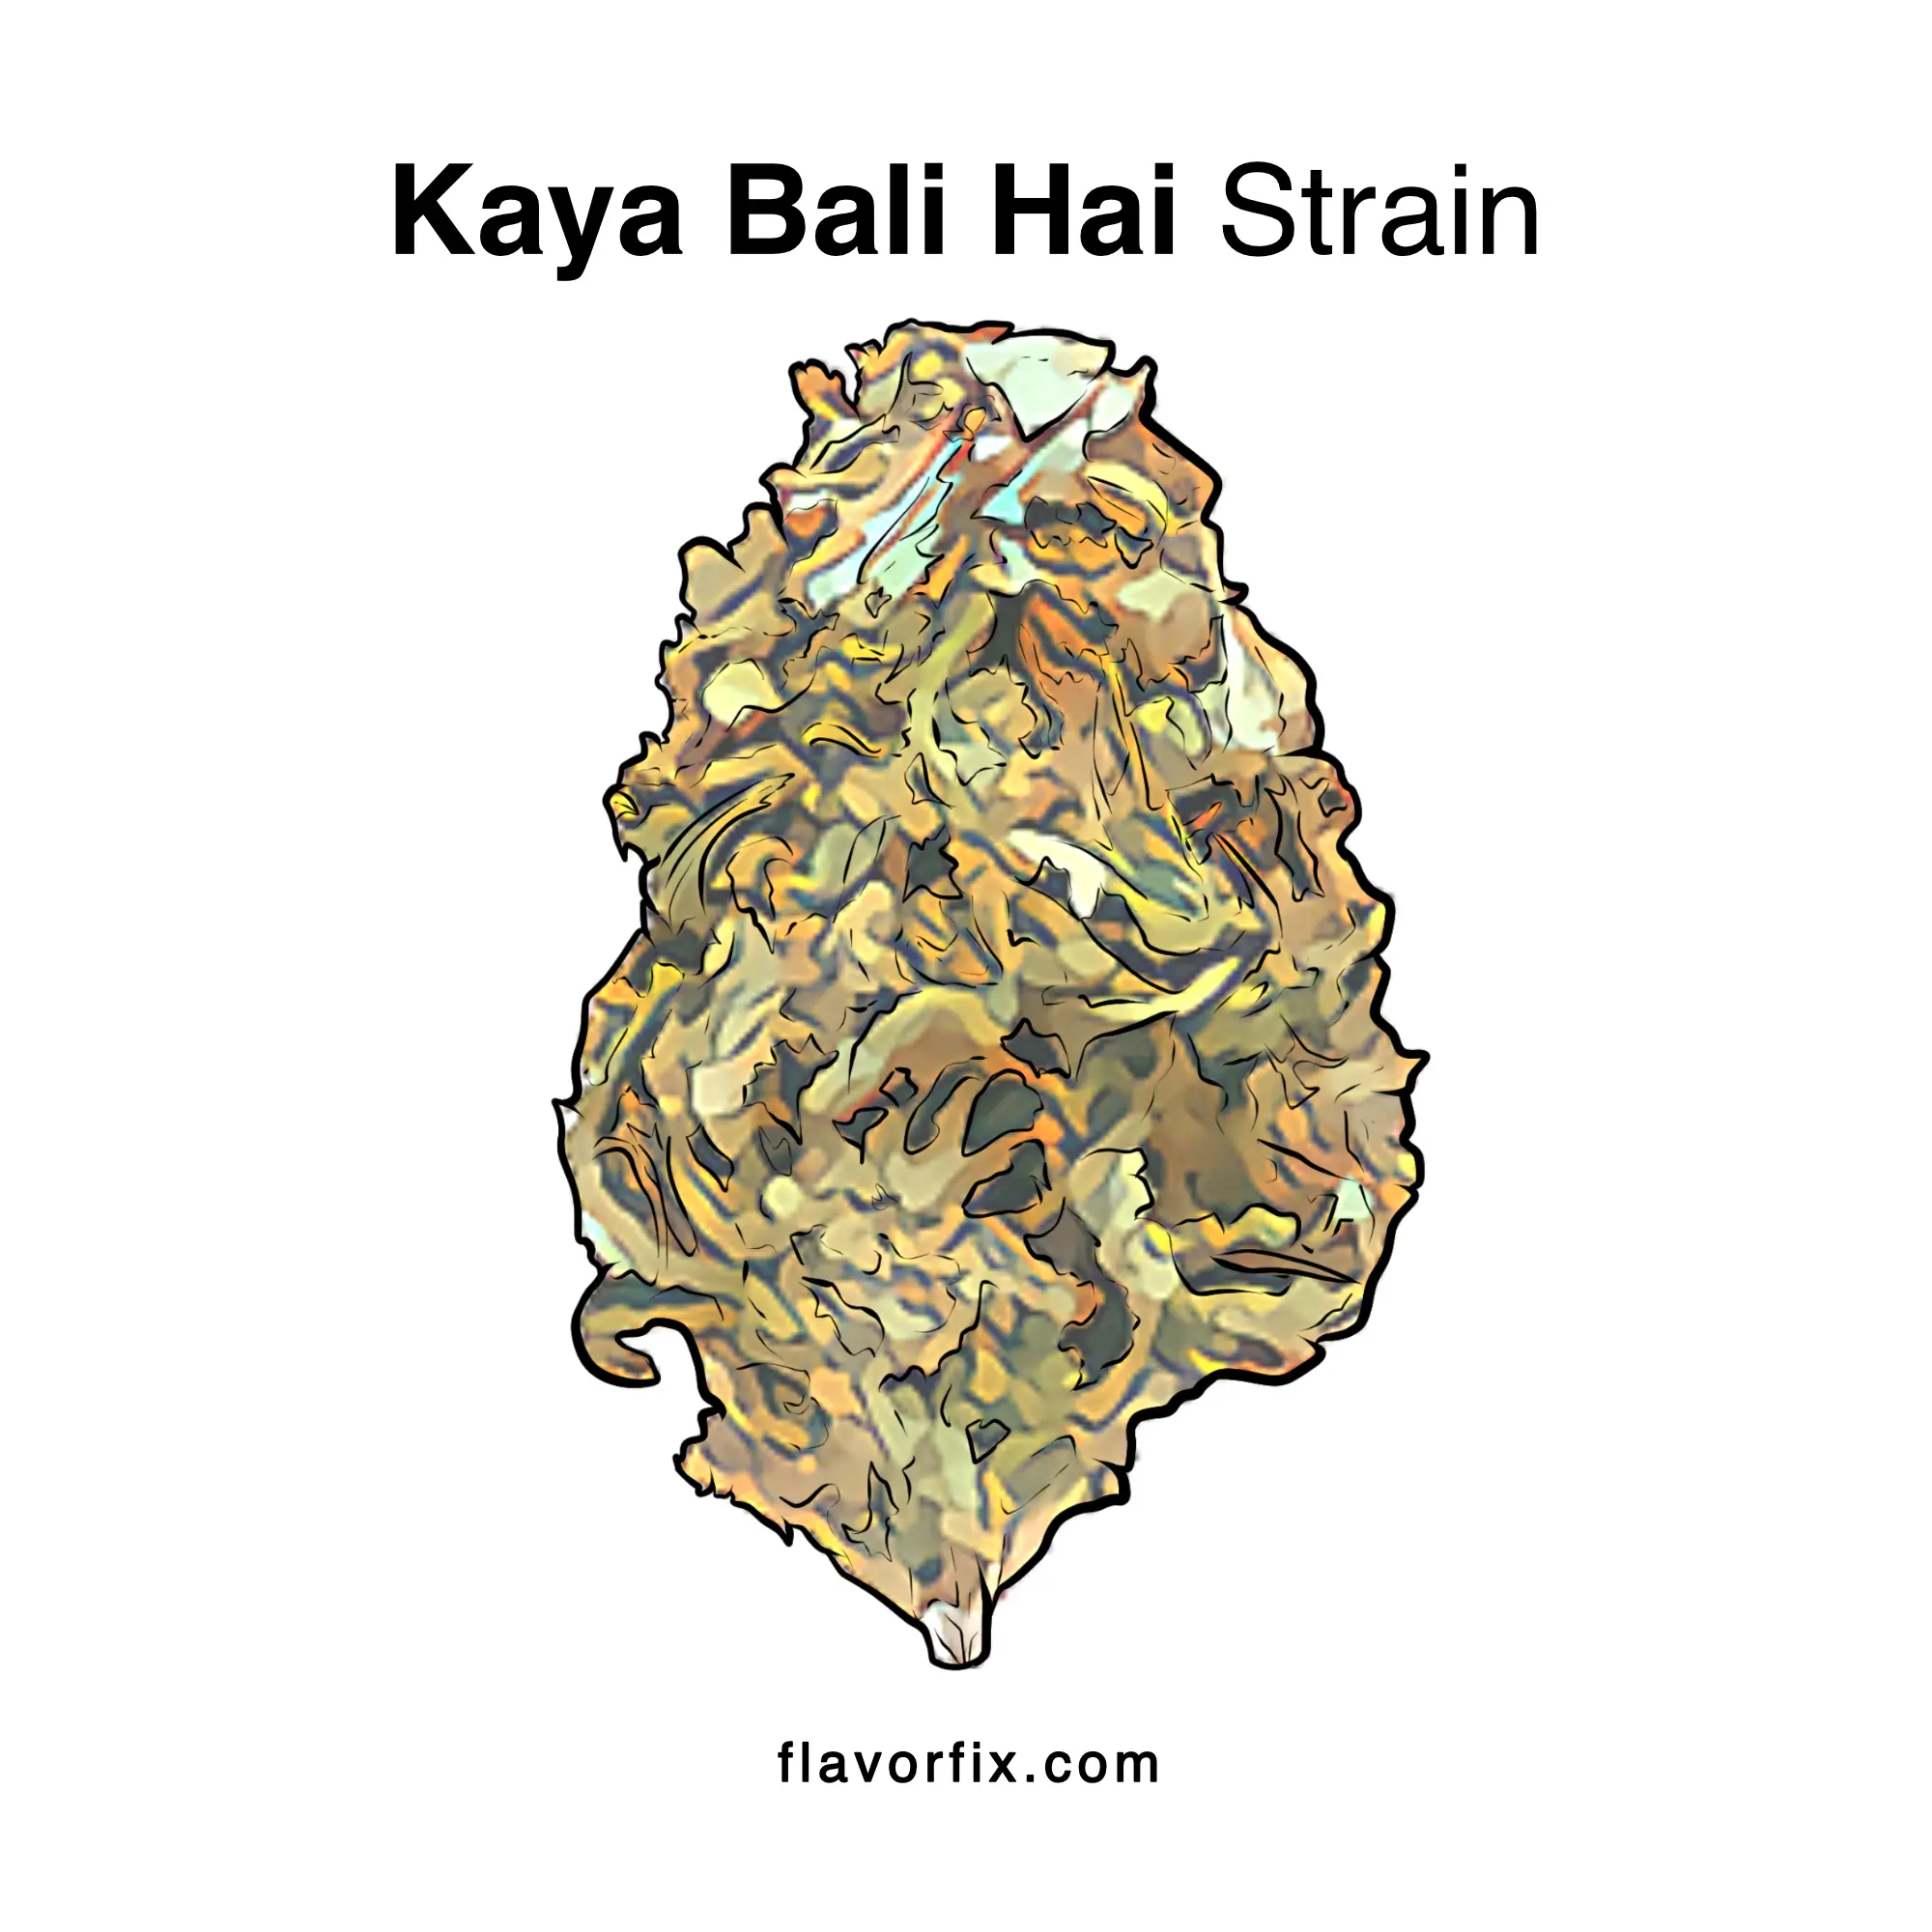 Kaya Bali Hai Strain